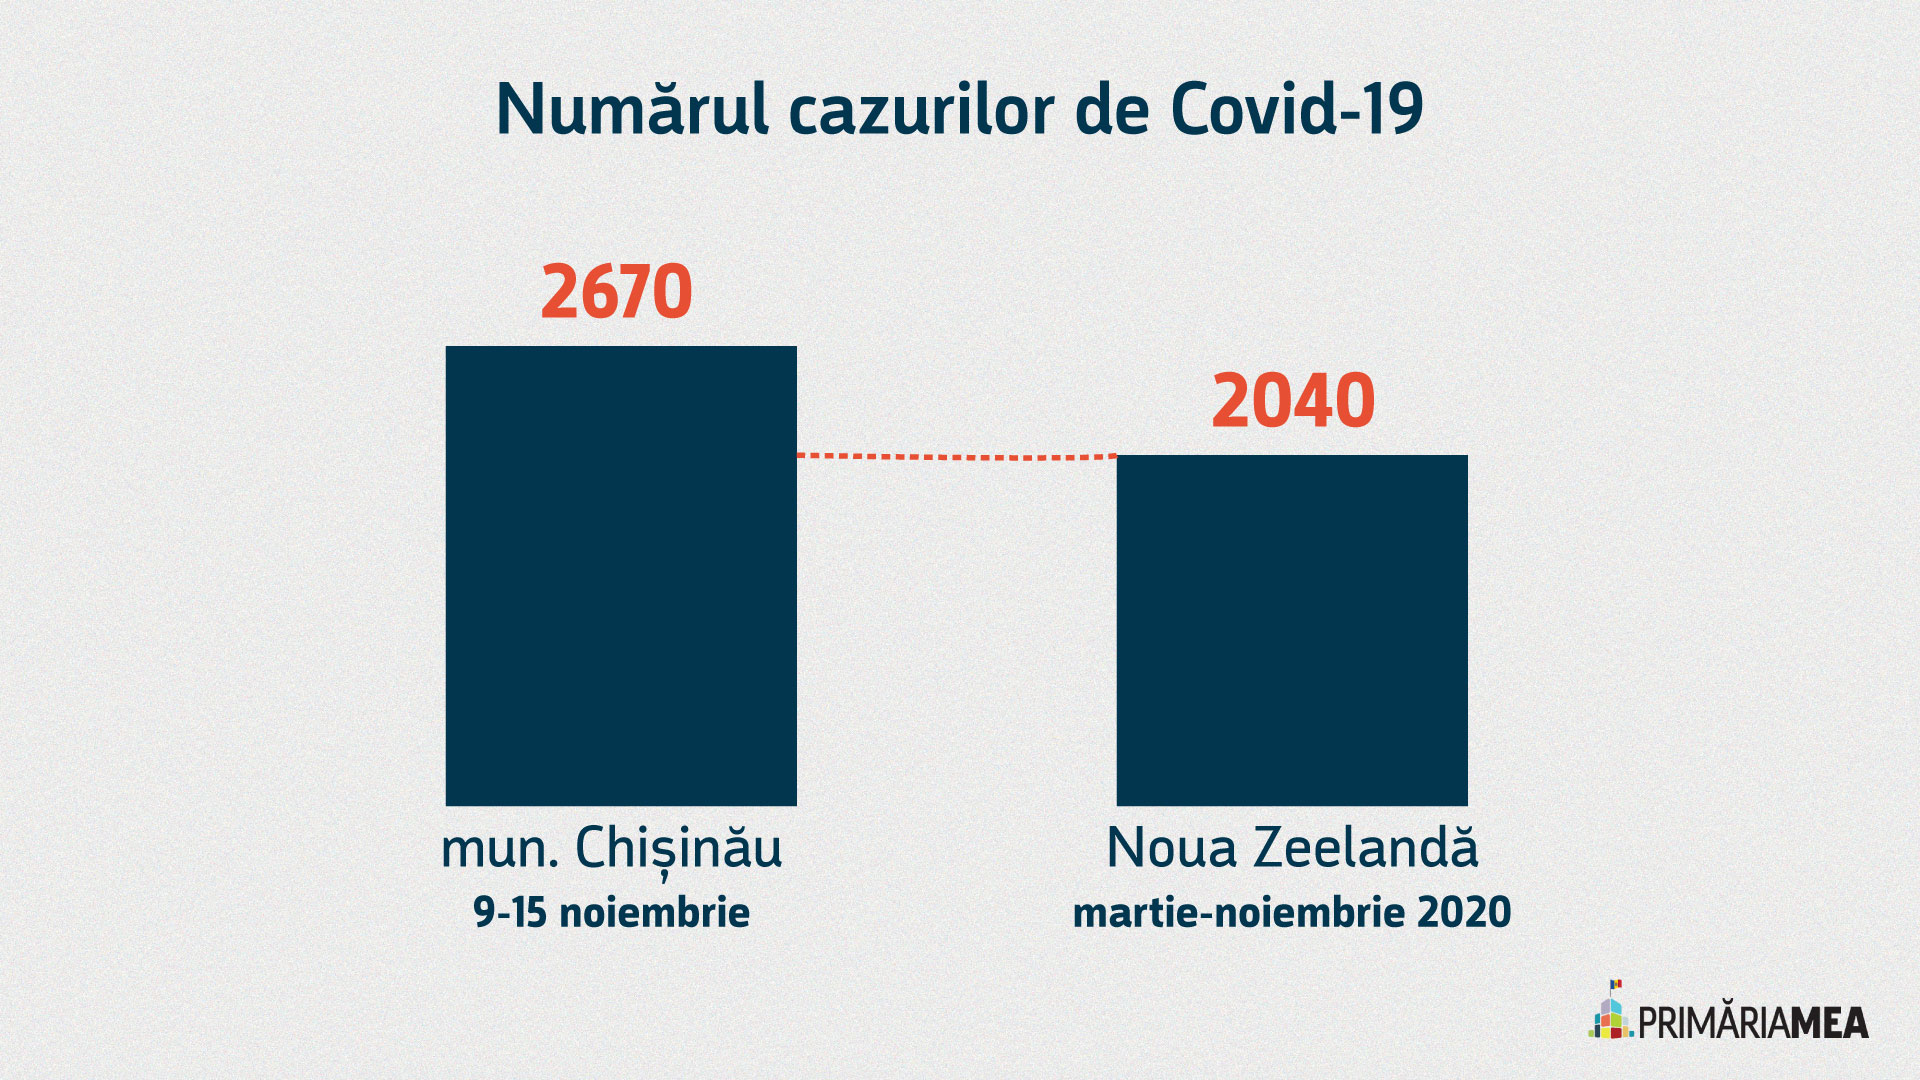 Infografic: comparația cazurilor de COVID-19 în mun. Chișinău și Noua Zeelandă, pe perioade diferite. Sursă: Primăria Mea